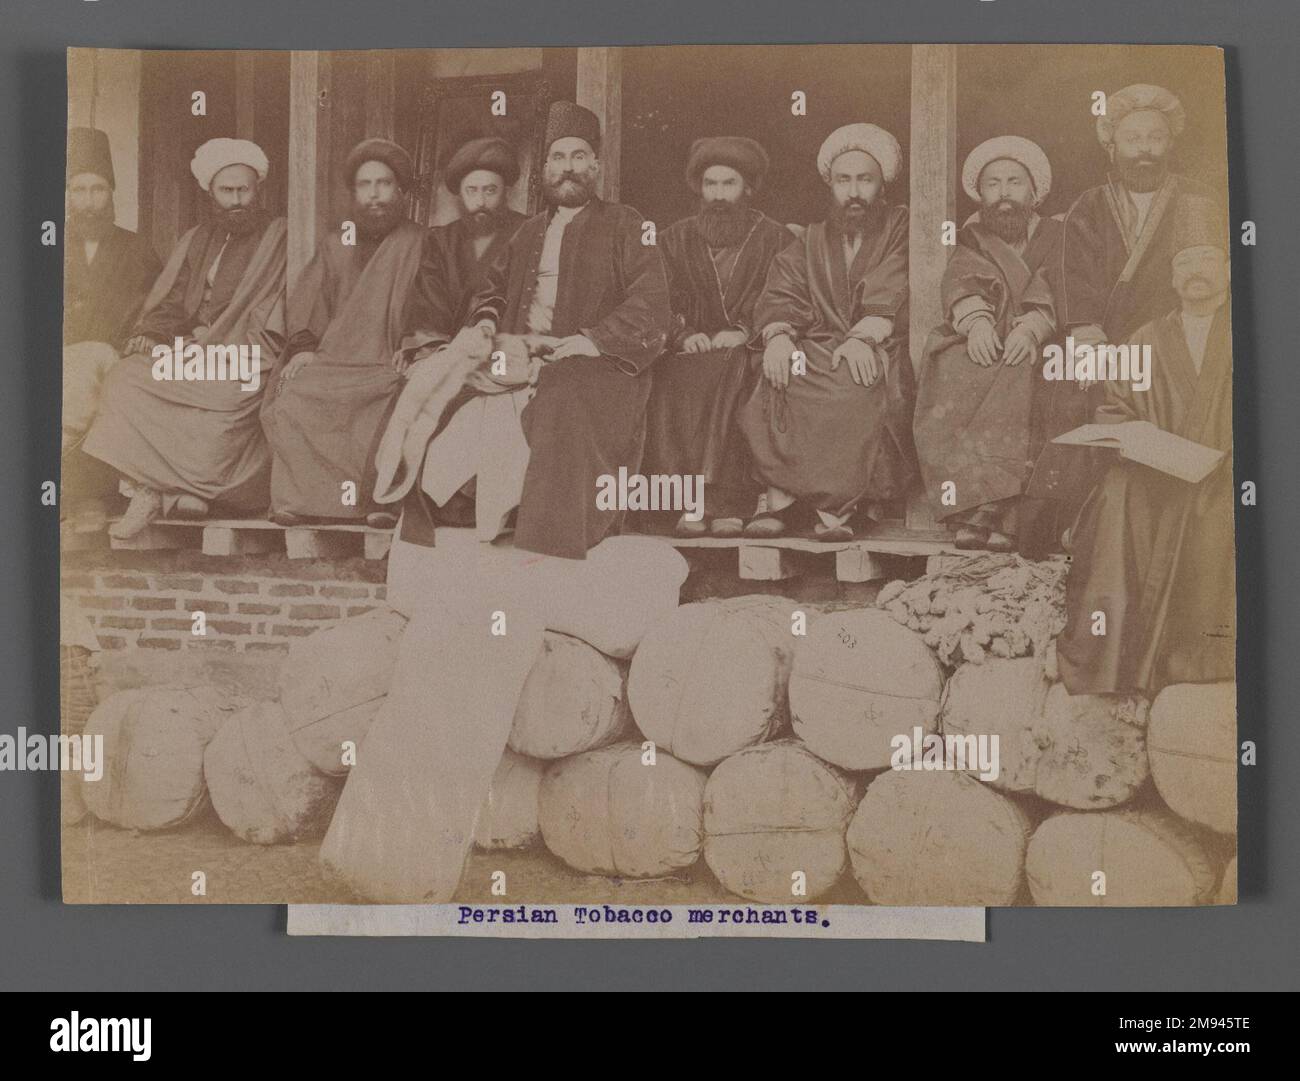 Perse Tobacco Merchants, l'une des 274 photos anciennes , fin 19th-début 20th siècle. Photographie argentée à l'albumine, 6 1/16 x 8 3/16 po (15,4 x 20,8 cm). Arts du monde islamique fin 19th-début 20th siècle Banque D'Images